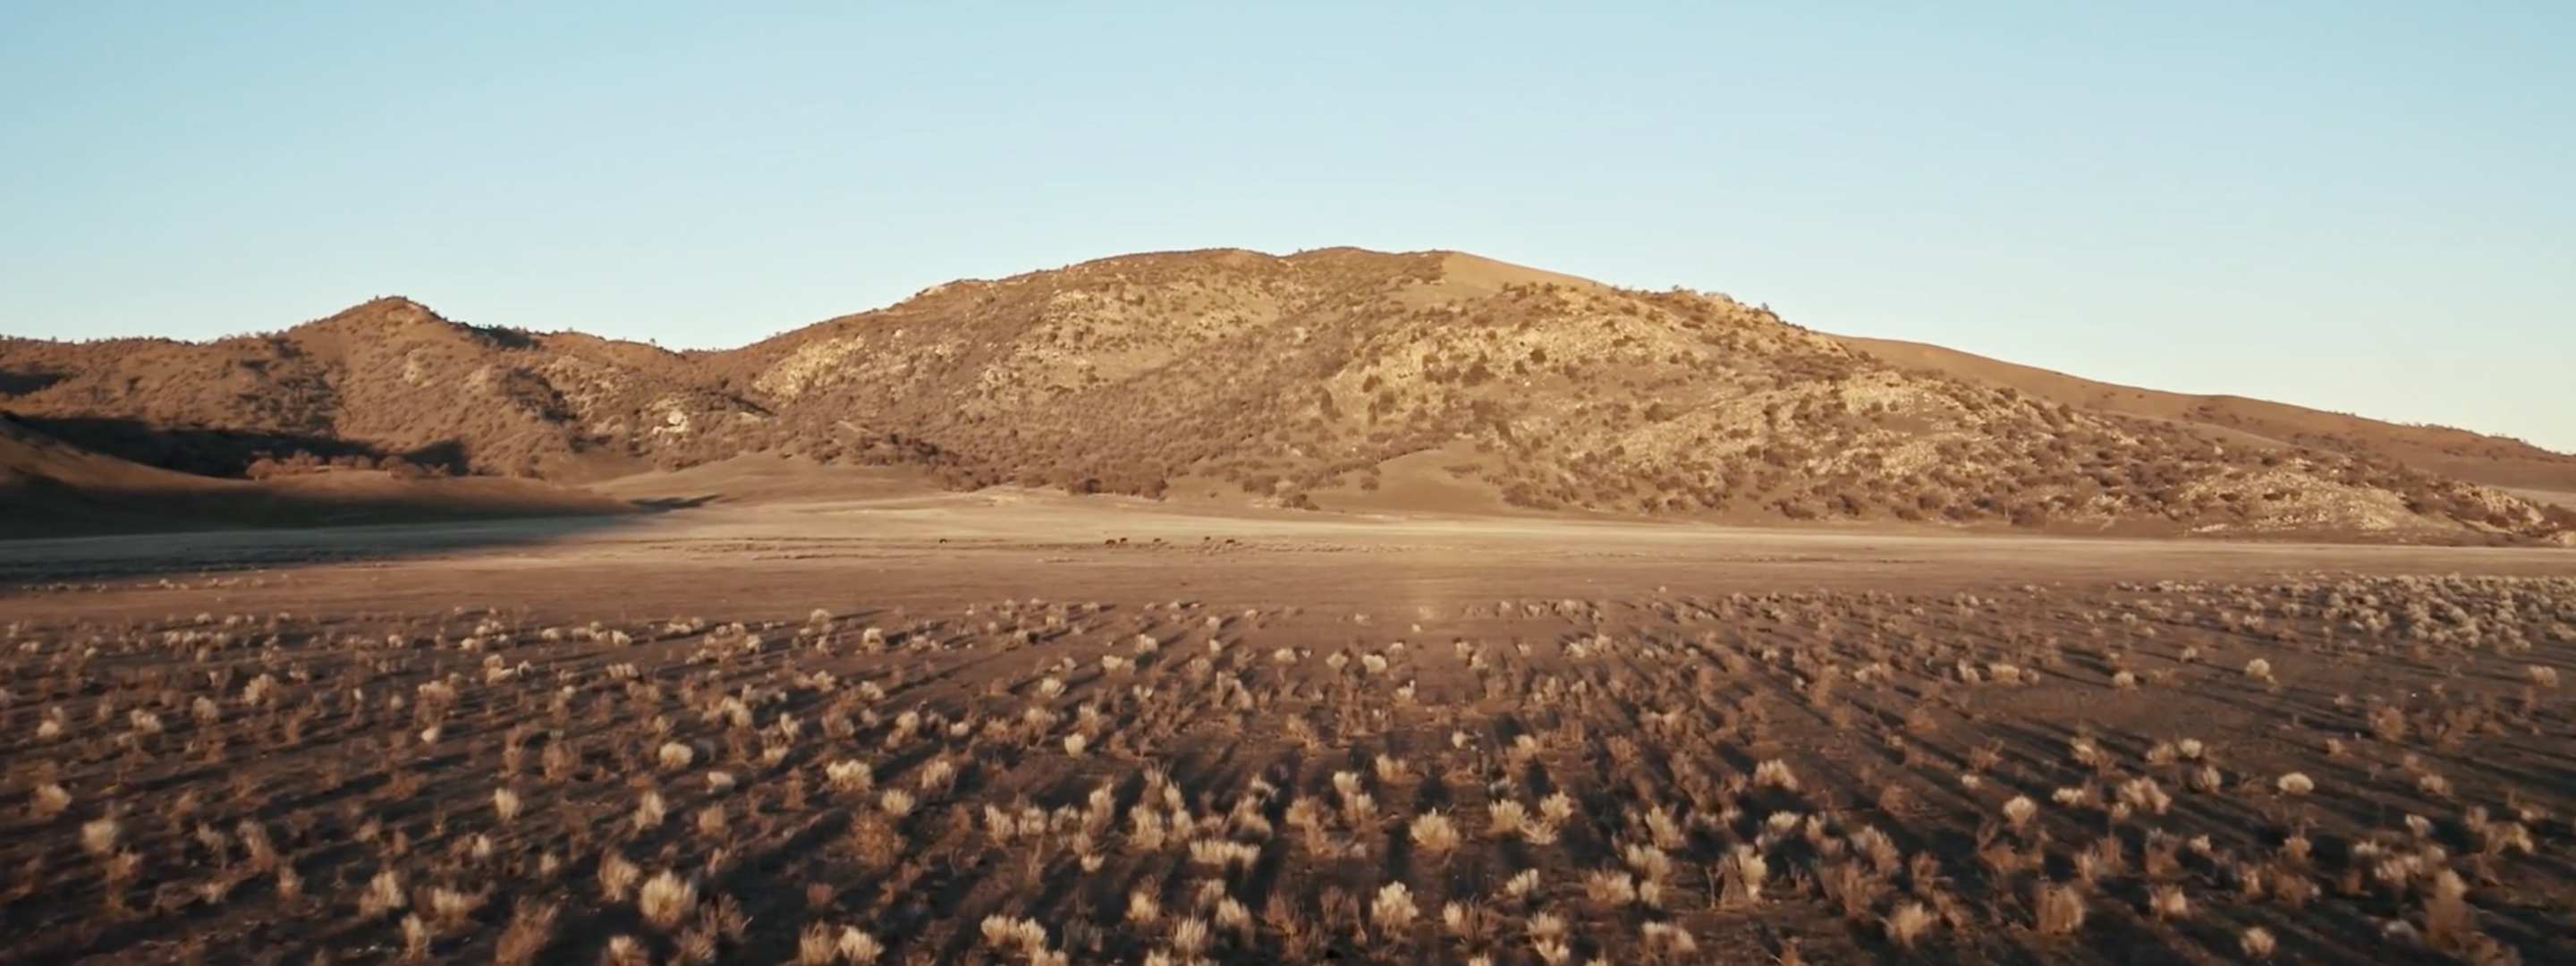 <a href="https://www.capgemini.com/news/inside-stories/mojave-desert/"></a>The Mojave Desert: Data for tortoises and tires